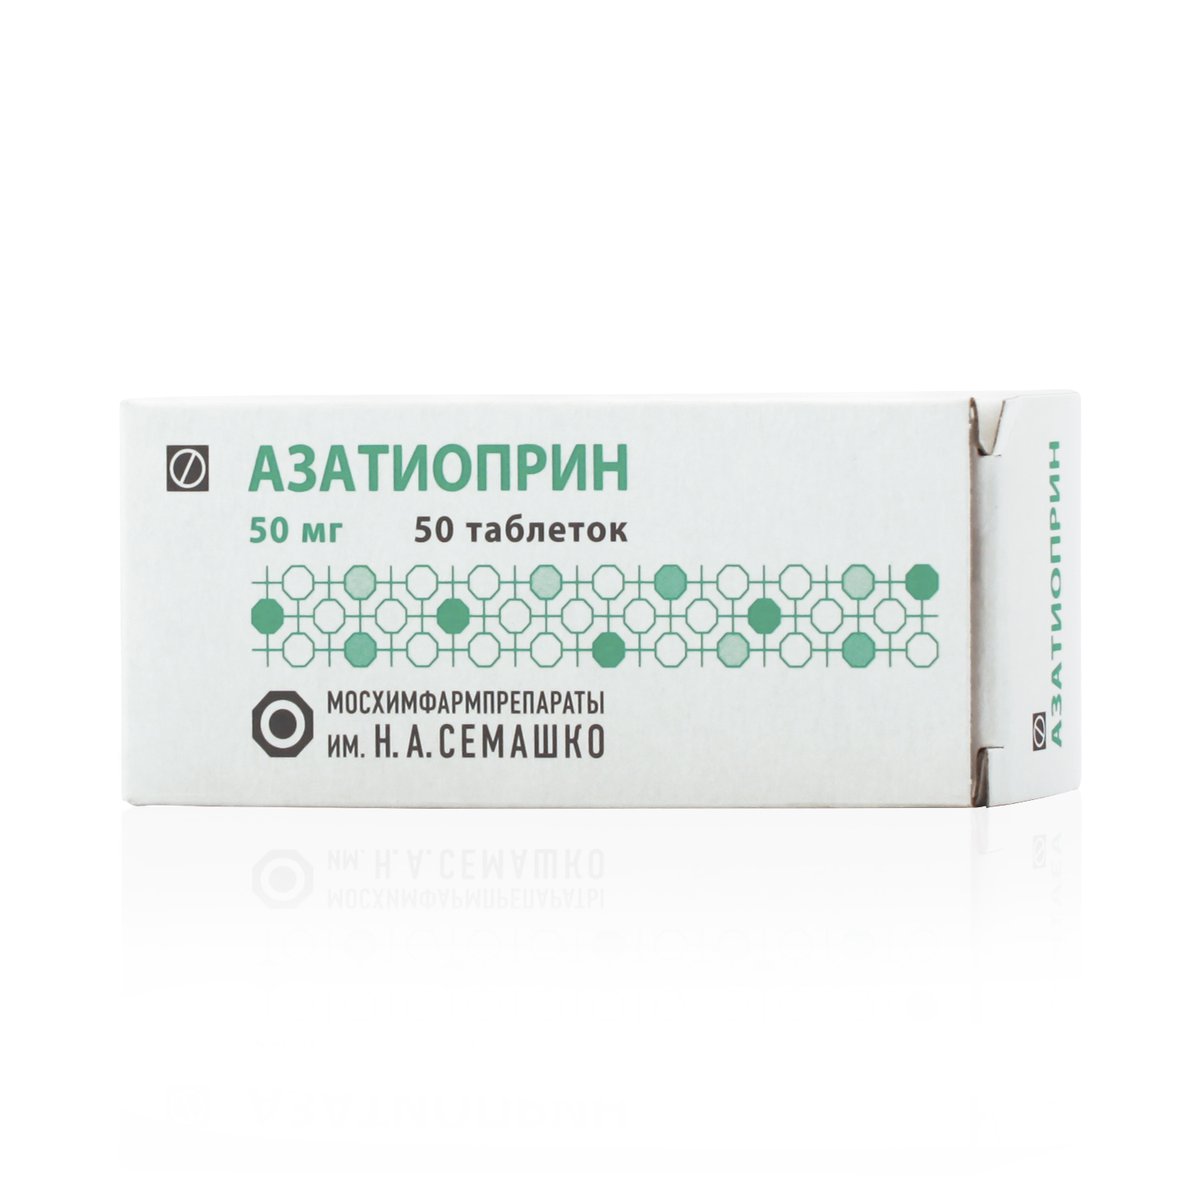 Азатиоприн (таблетки, 50 шт, 50 мг) - цена,  онлайн  .